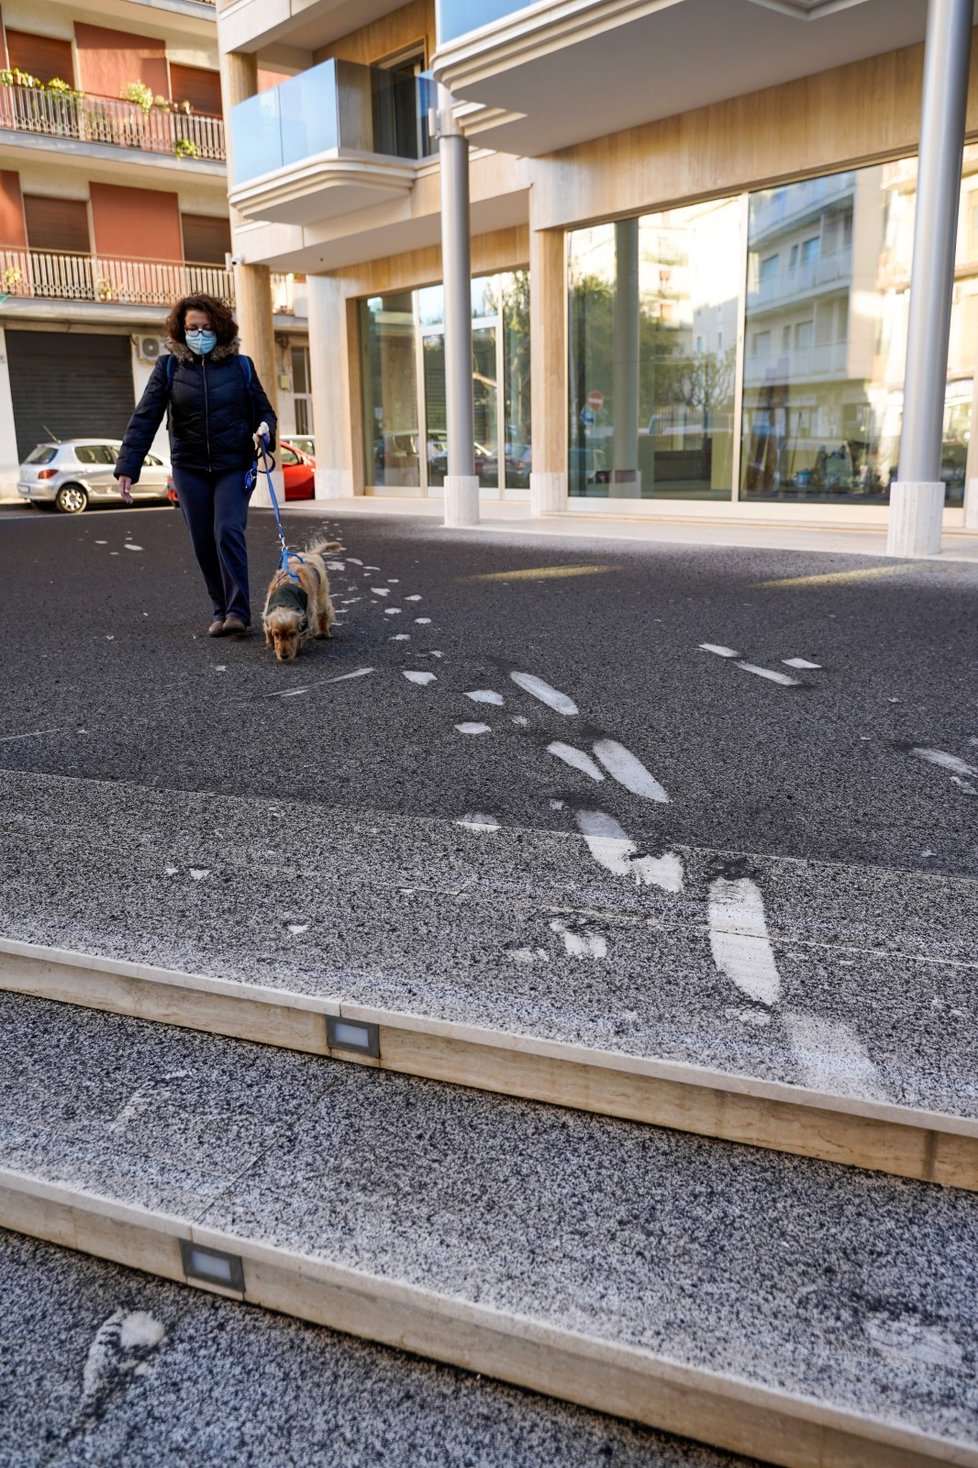 Italové uklízejí popel z Etny v ulicích Katánie (17. 2. 021).